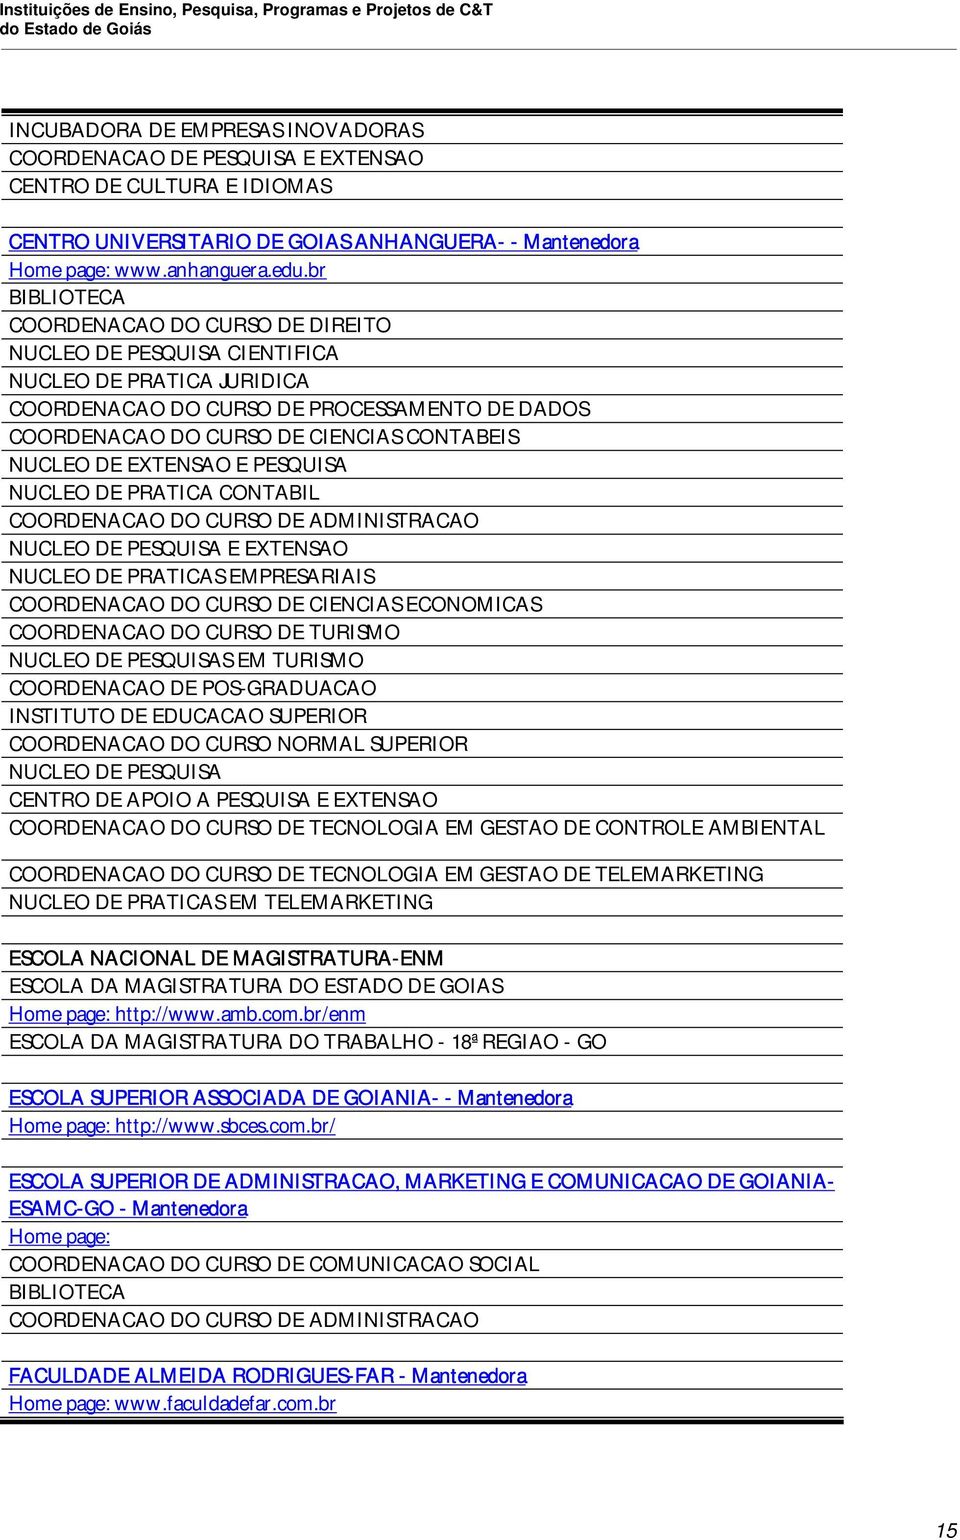 br BIBLIOTECA COORDENACAO DO CURSO DE DIREITO NUCLEO DE PESQUISA CIENTIFICA NUCLEO DE PRATICA JURIDICA COORDENACAO DO CURSO DE PROCESSAMENTO DE DADOS COORDENACAO DO CURSO DE CIENCIAS CONTABEIS NUCLEO